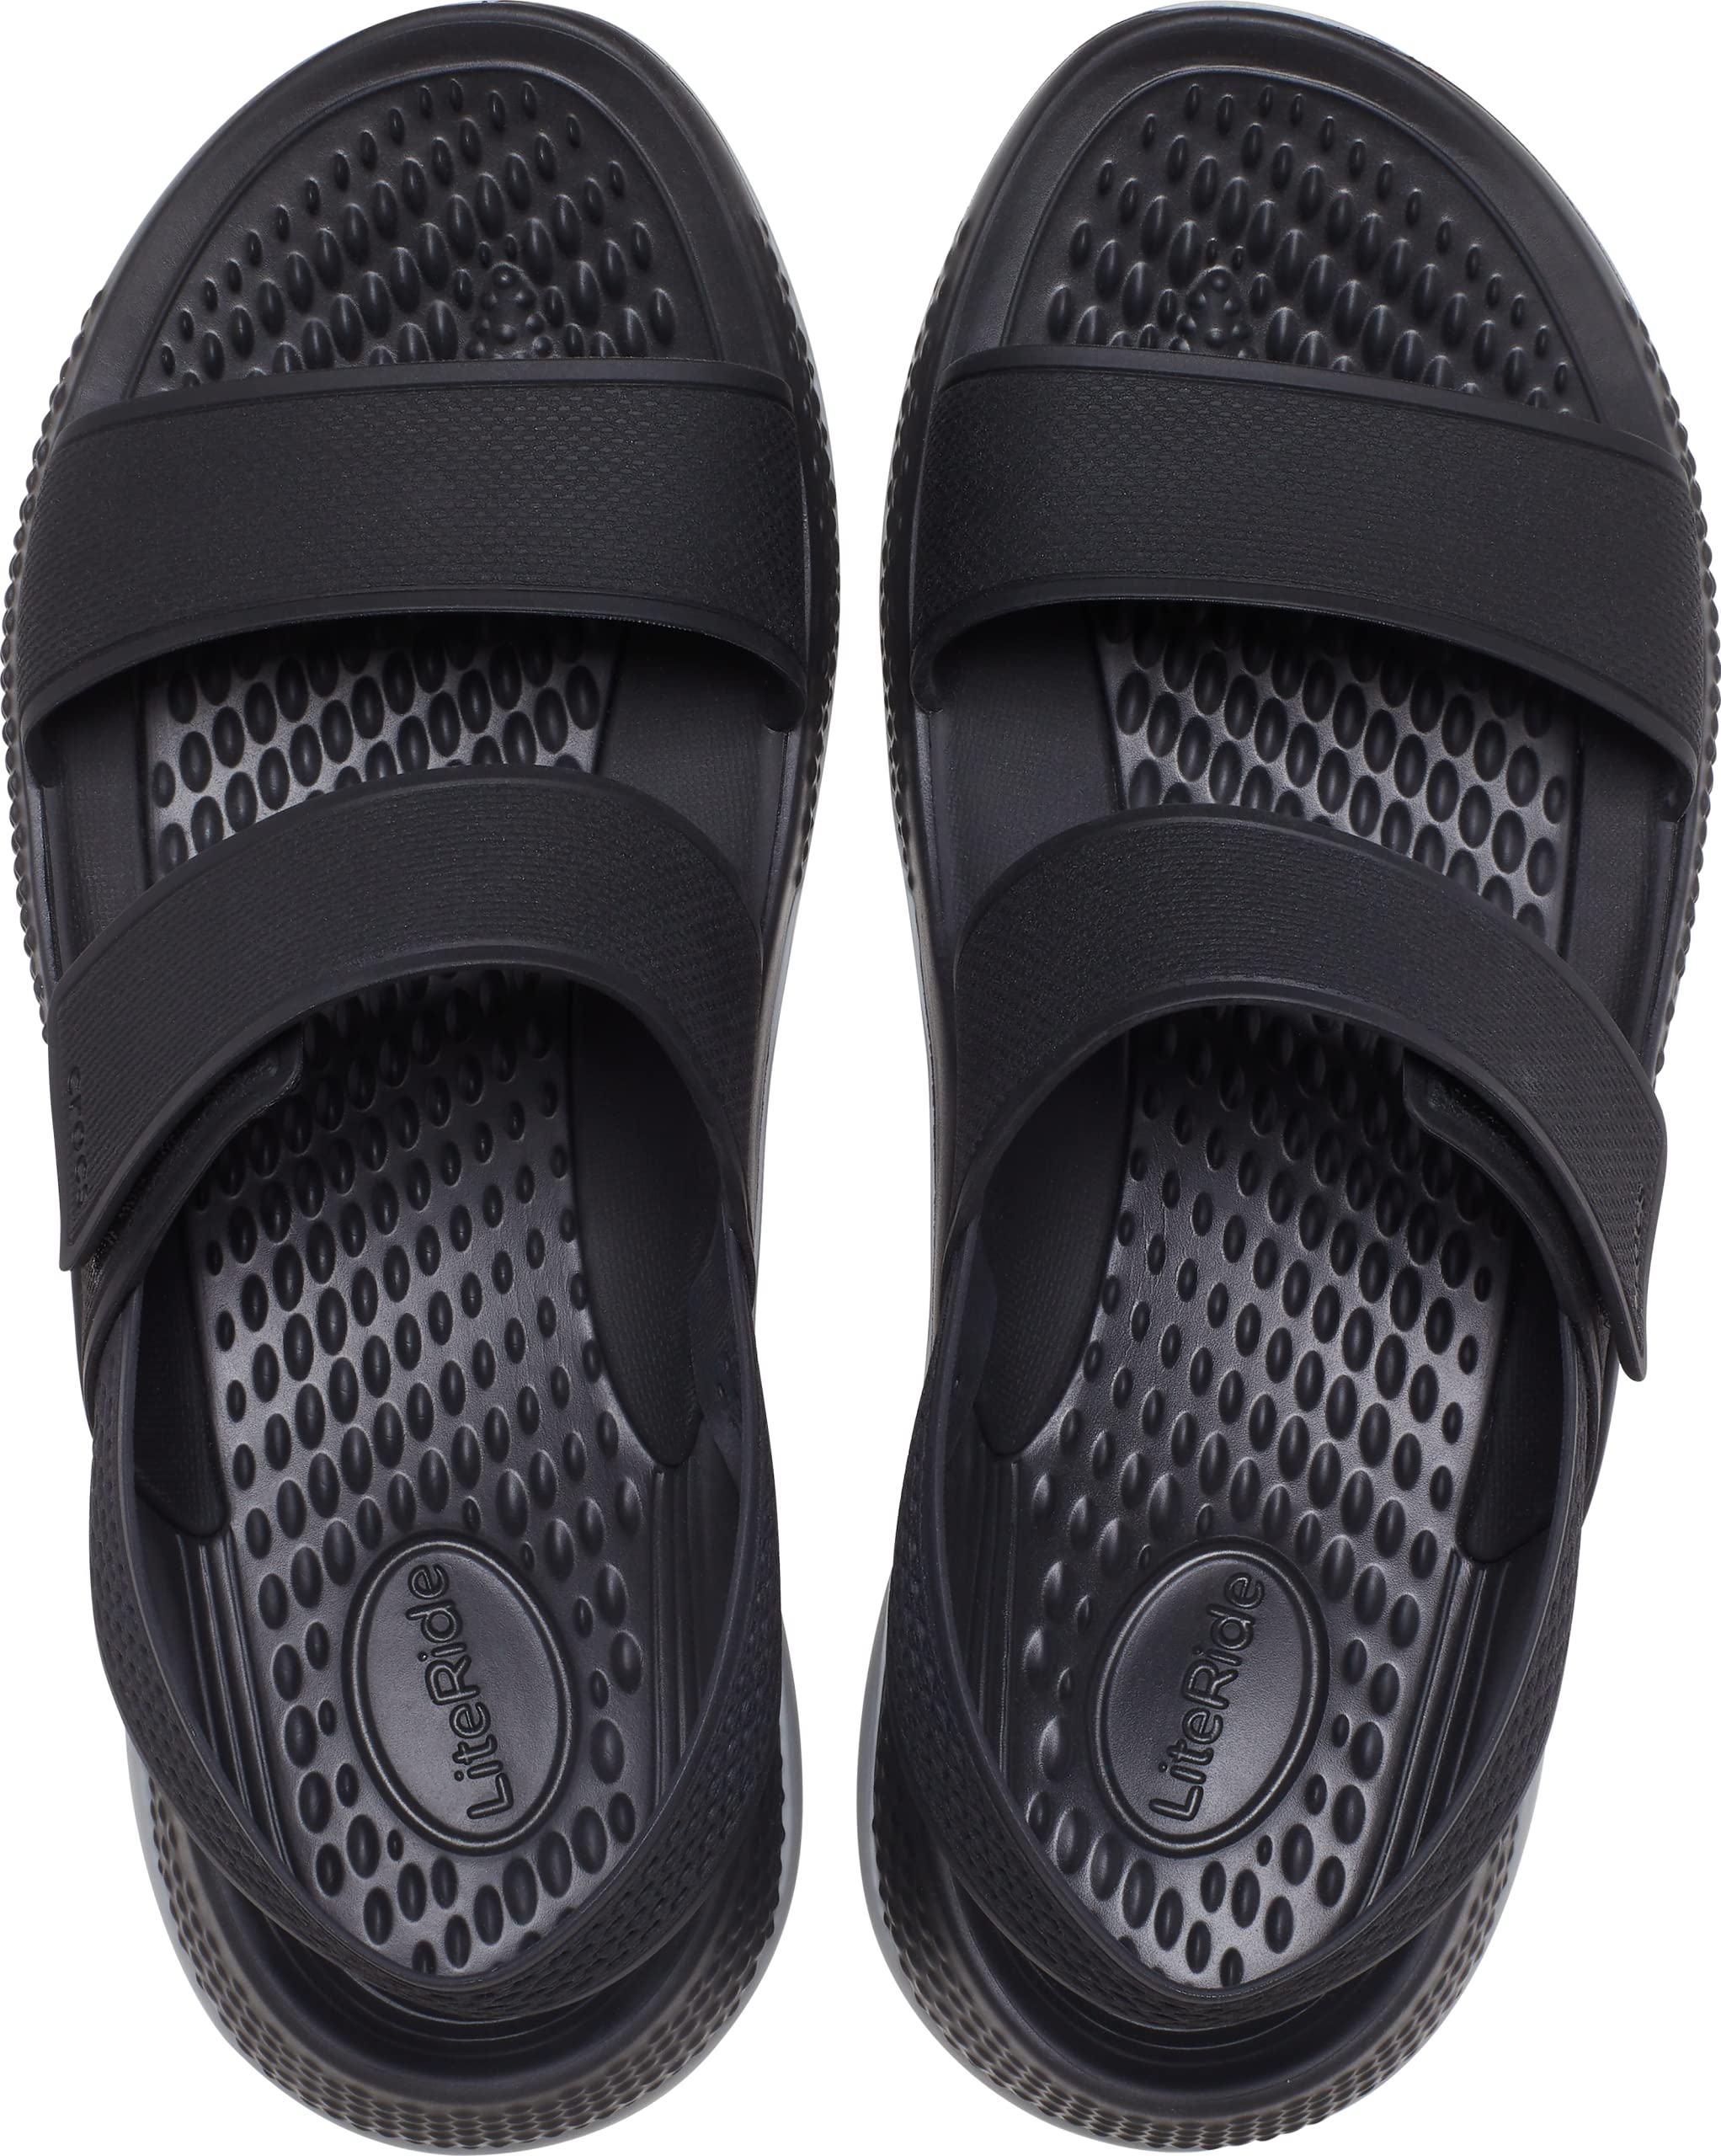 Crocs Women's Literide 360 Sandals